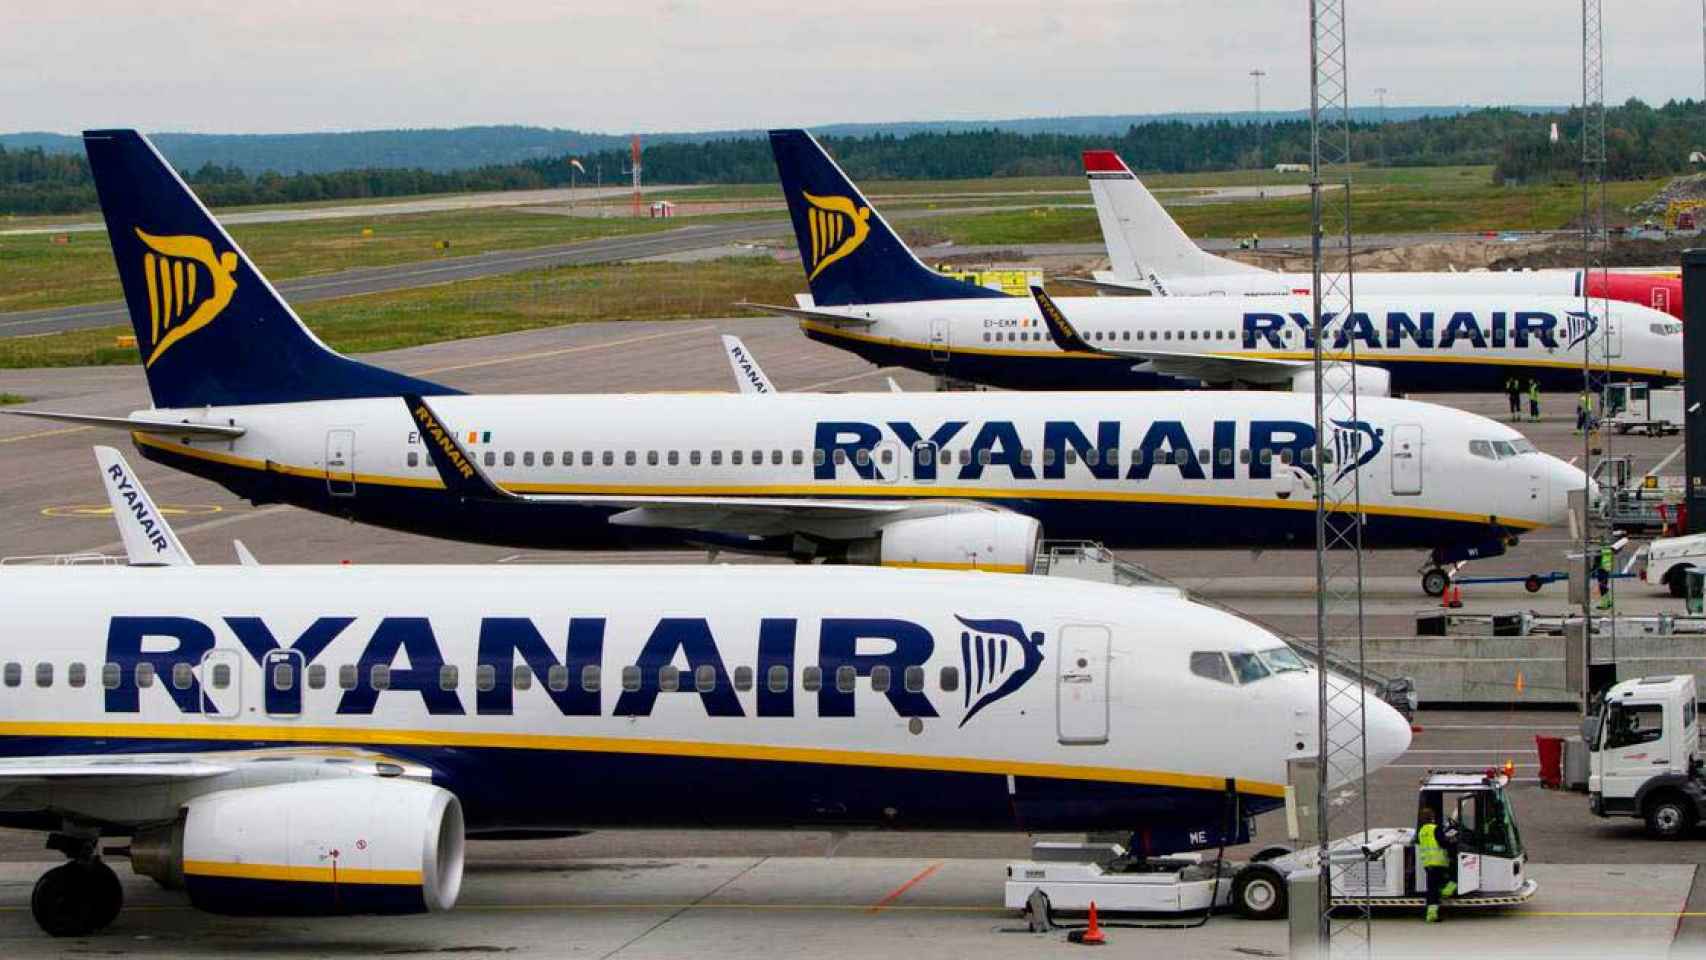 La flota de aviones de Ryanair / CG